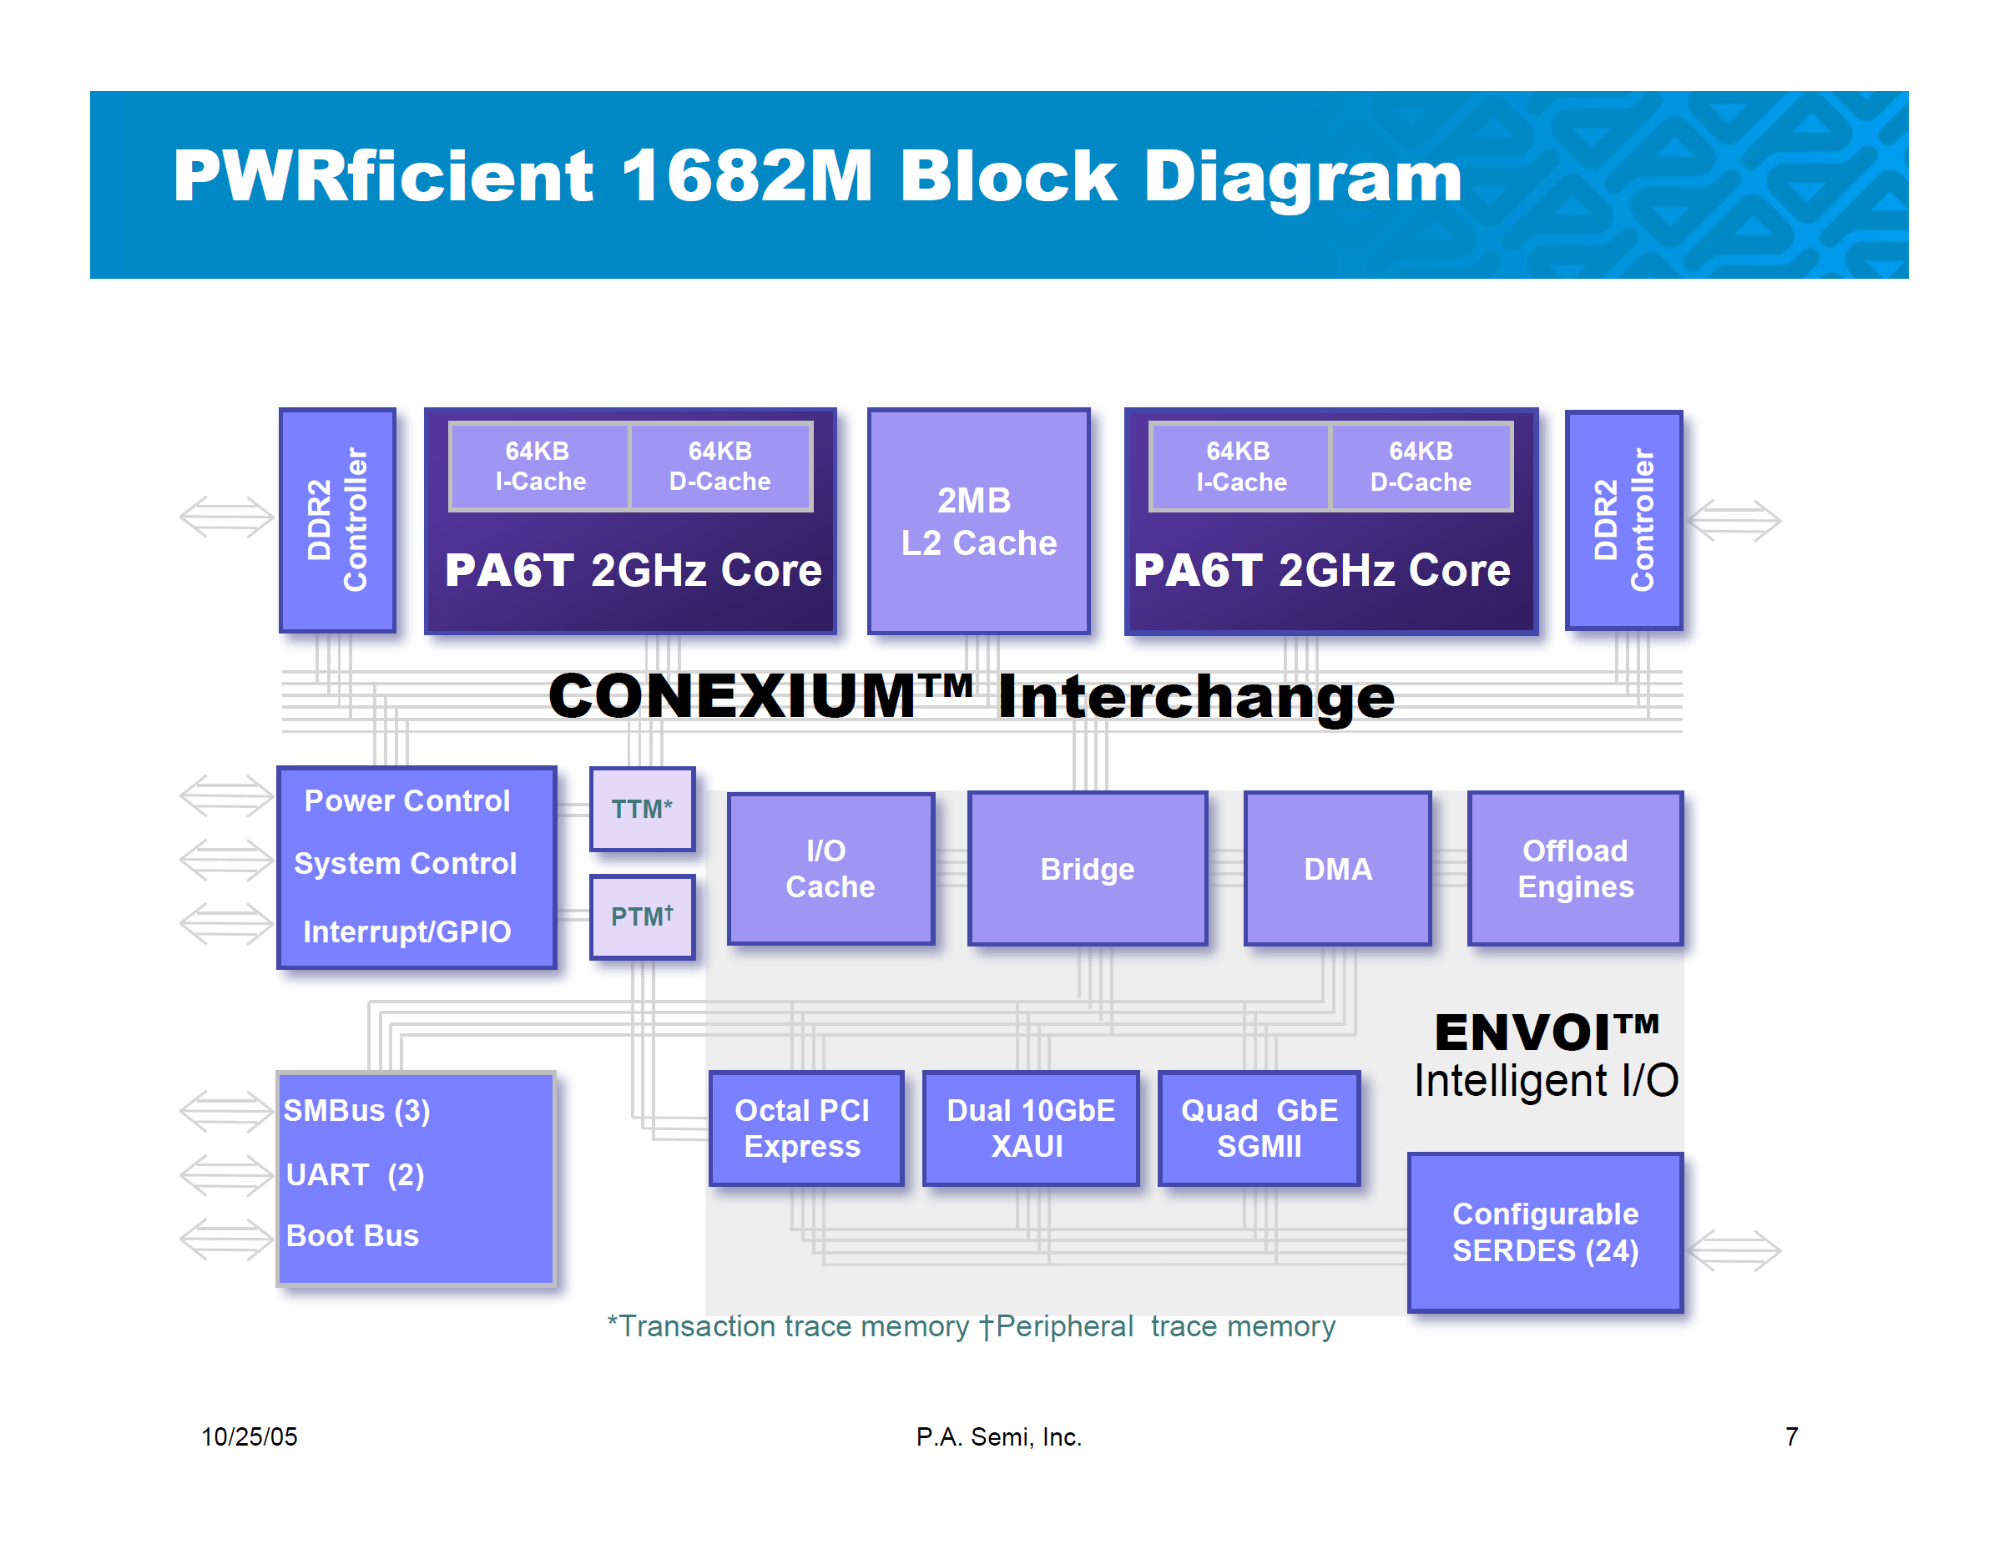 照片中提到了PWRficient 1682M Block Diagram、64KB、64KB，包含了網頁、中央處理器、壓水、多核處理器、想像技術